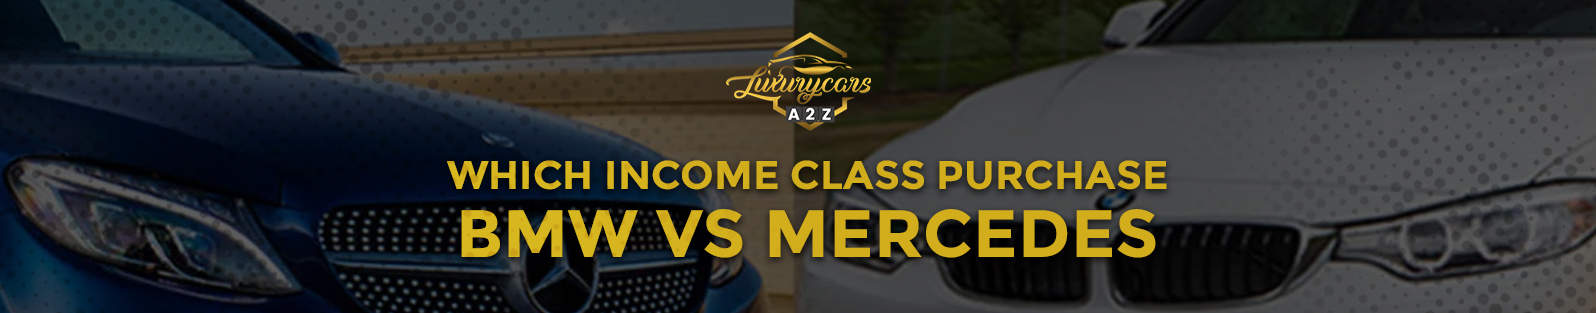 Quelle classe de revenus achète une BMW ou une Mercedes ?